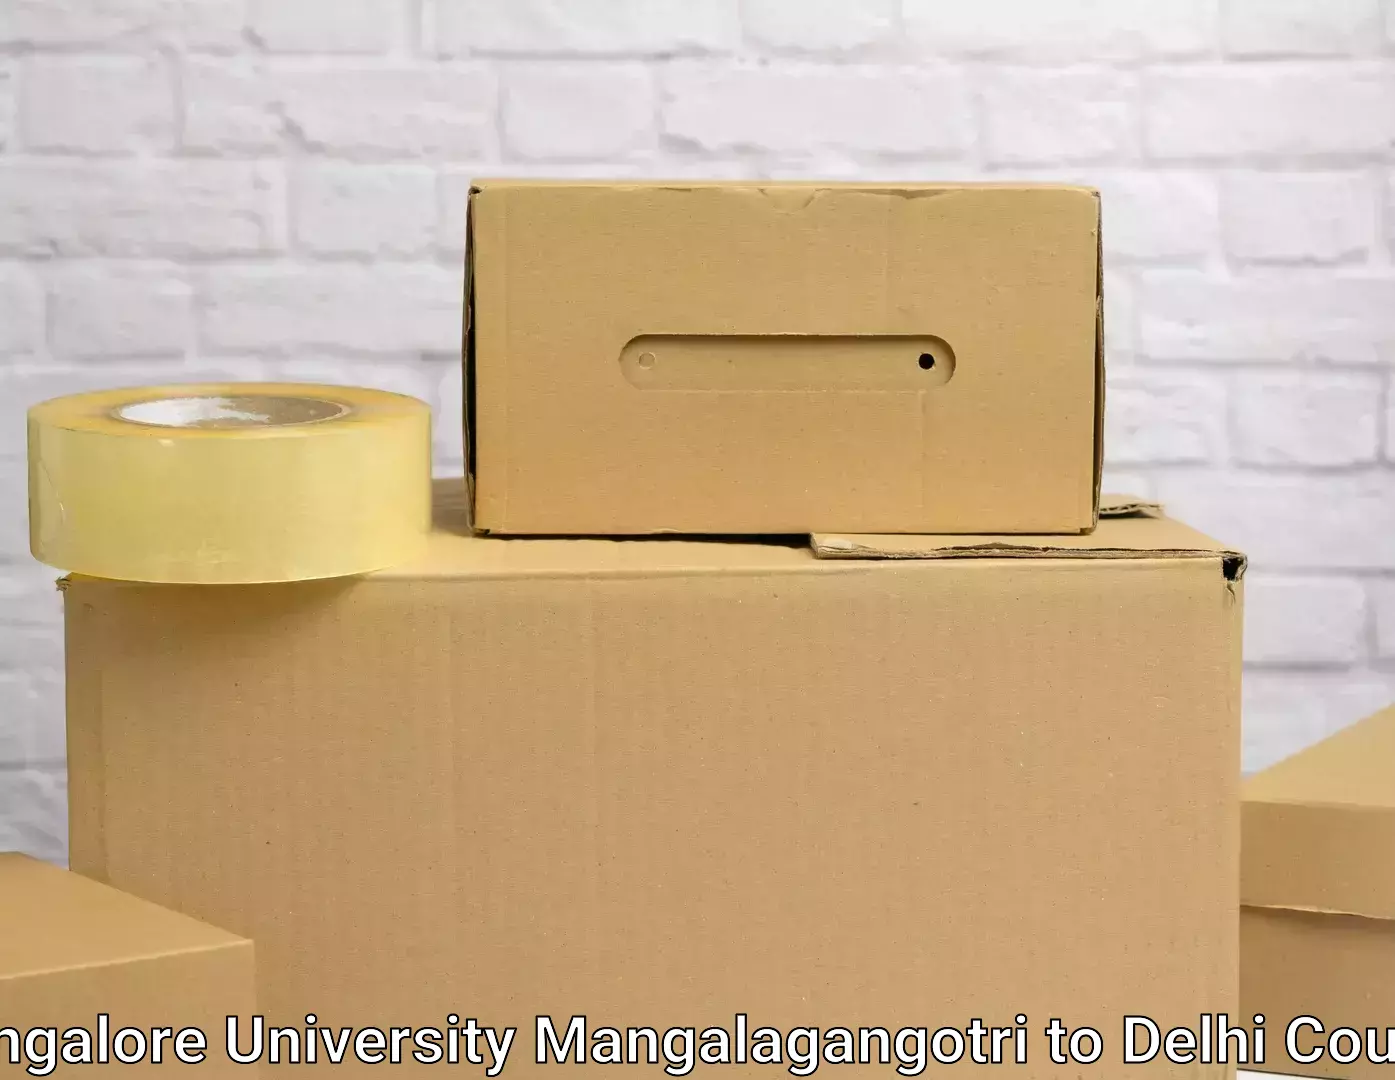 Trusted relocation experts Mangalore University Mangalagangotri to Delhi